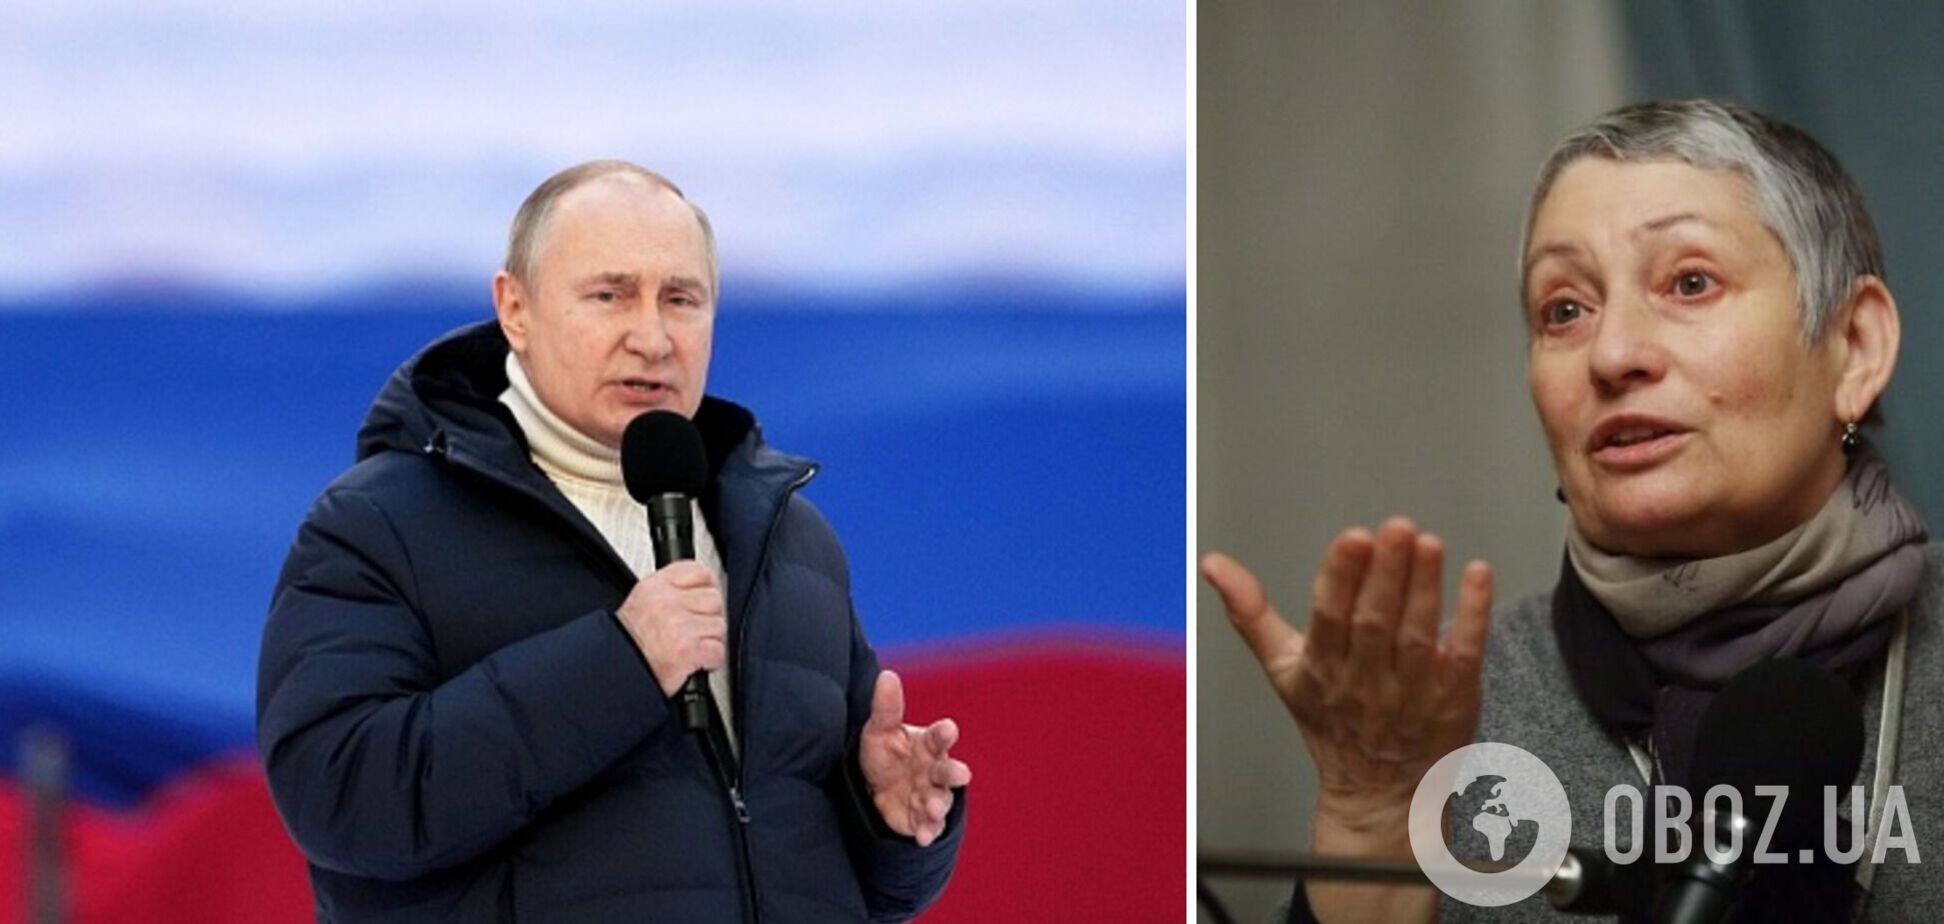 Улицька: Путін втратив почуття реальності, Захід недооцінює загрозу від Росії